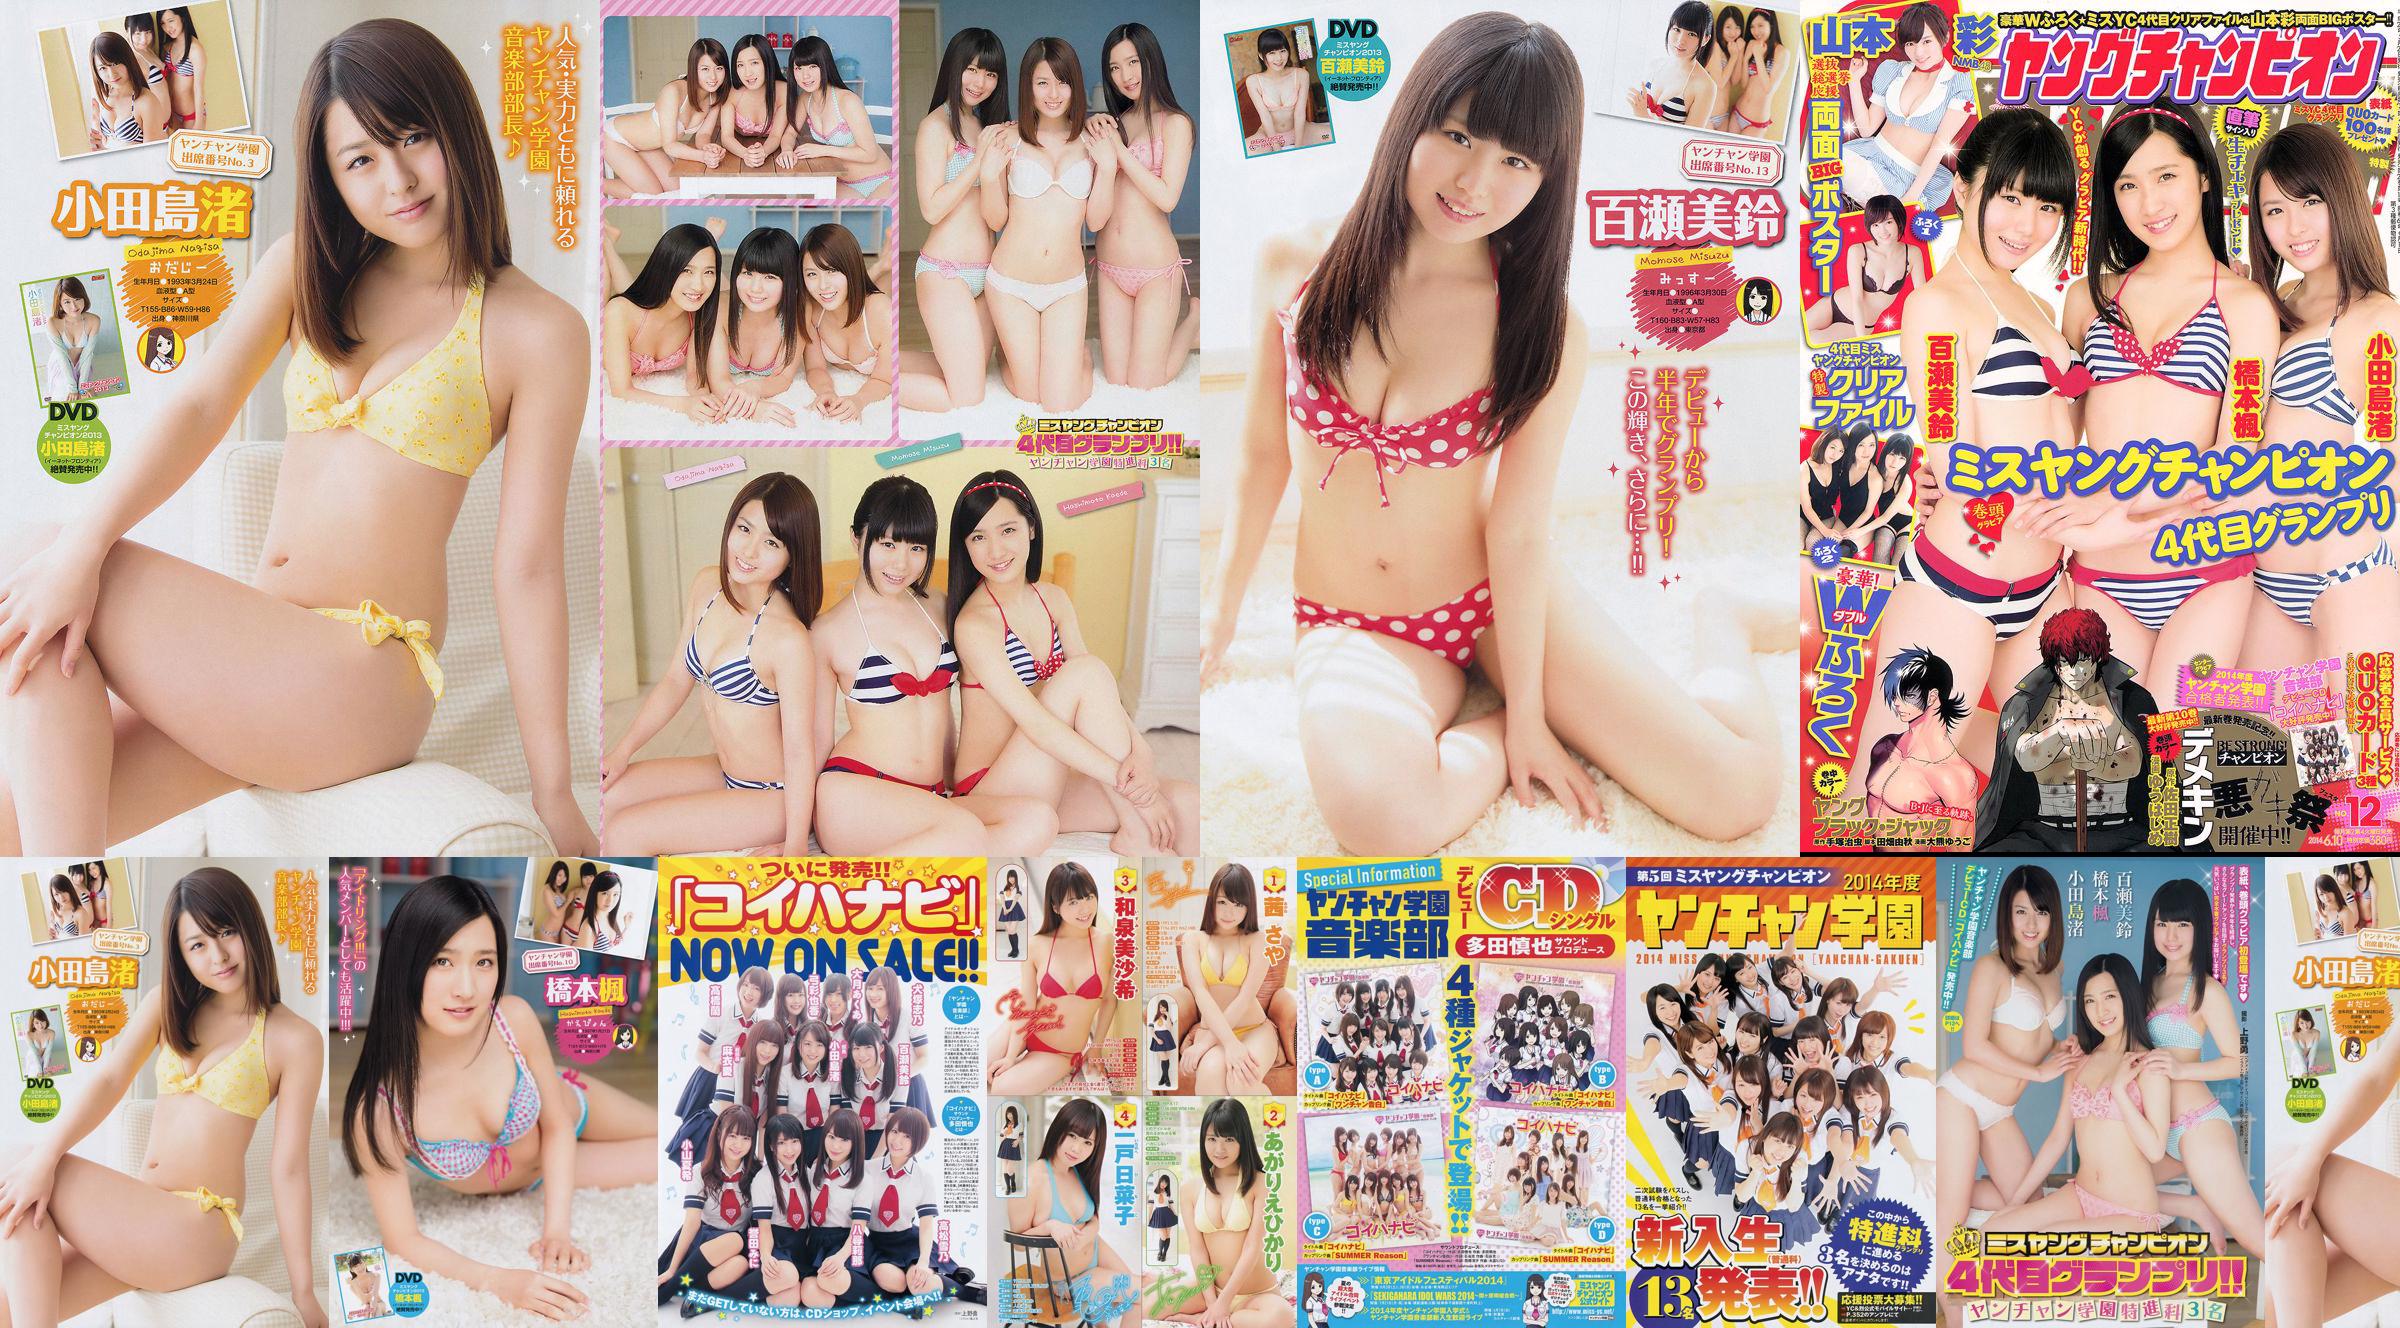 [Giovane Campione] Nagisa Odajima Kaede Hashimoto Misuzu Momose 2014 No.12 Fotografia No.e36ed1 Pagina 1